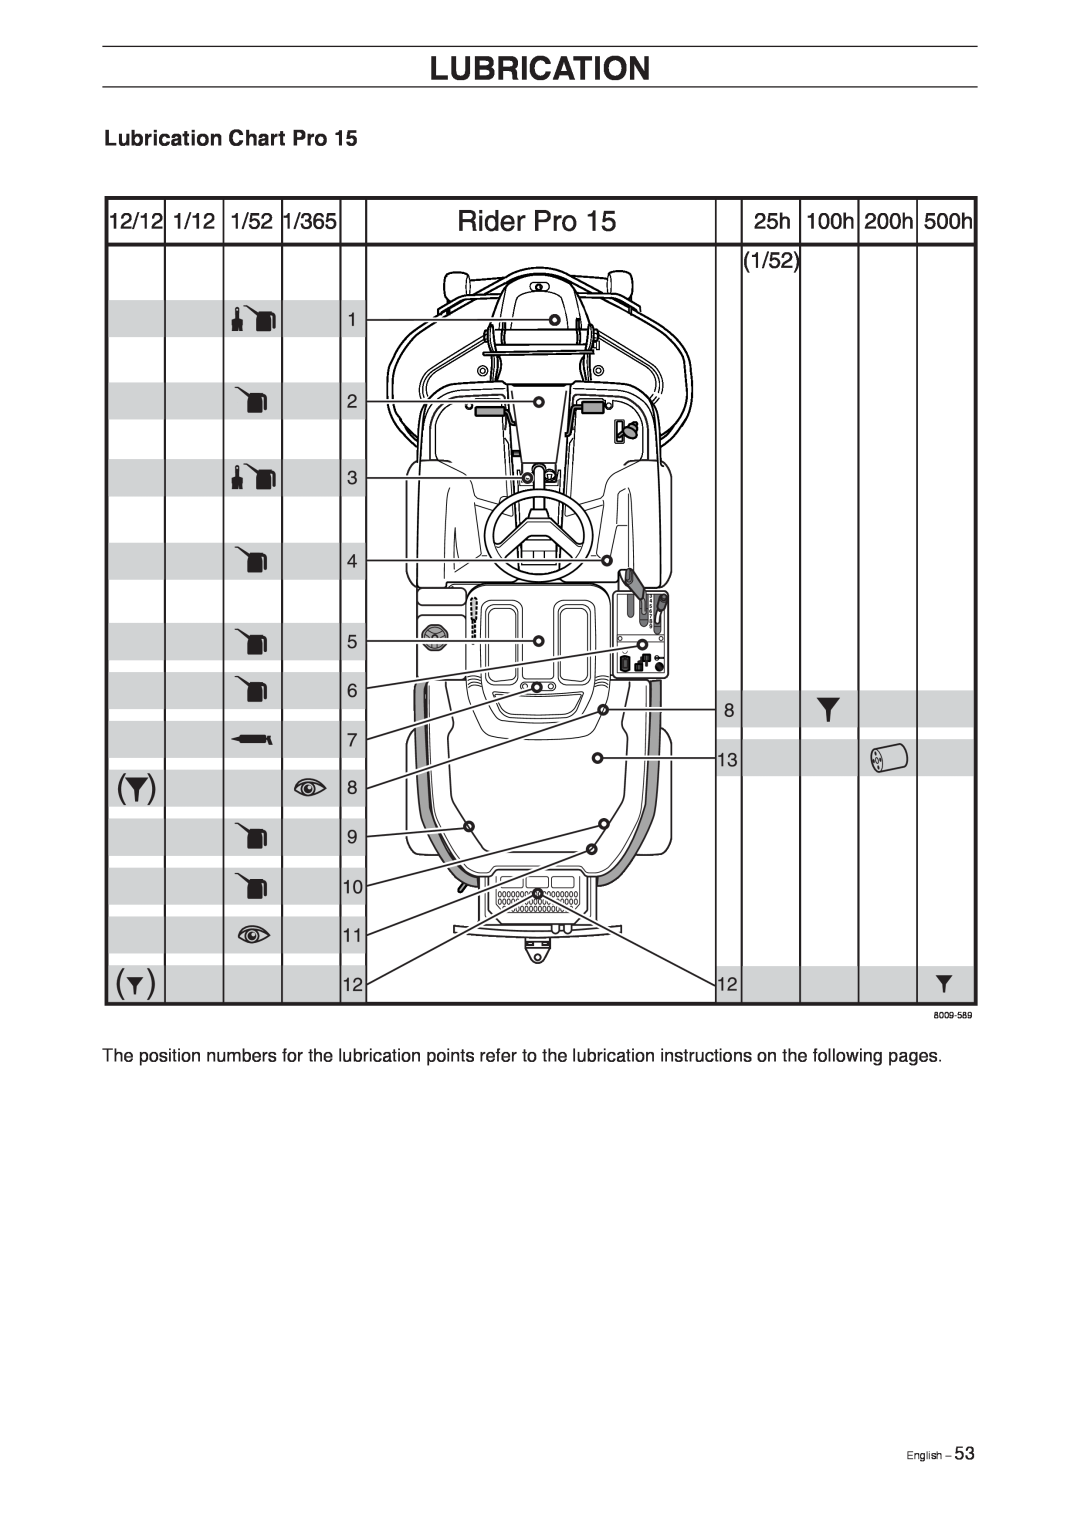 Husqvarna Pro 18 AWD manual Lubrication Chart Pro, English, 8009-589 